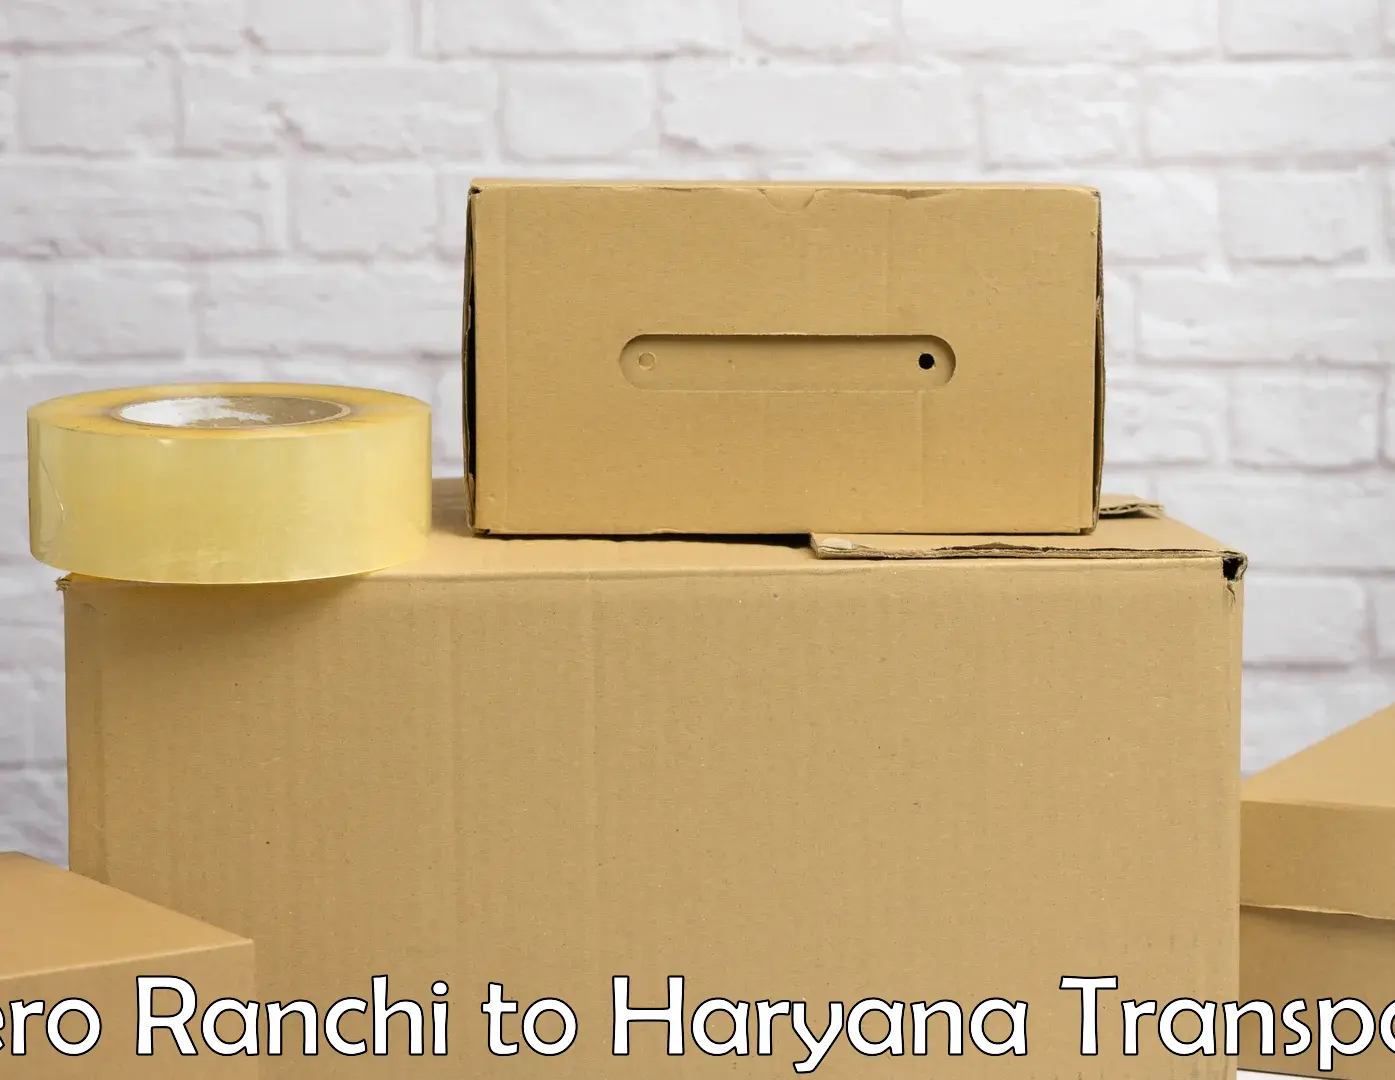 Interstate goods transport in Bero Ranchi to Narwana